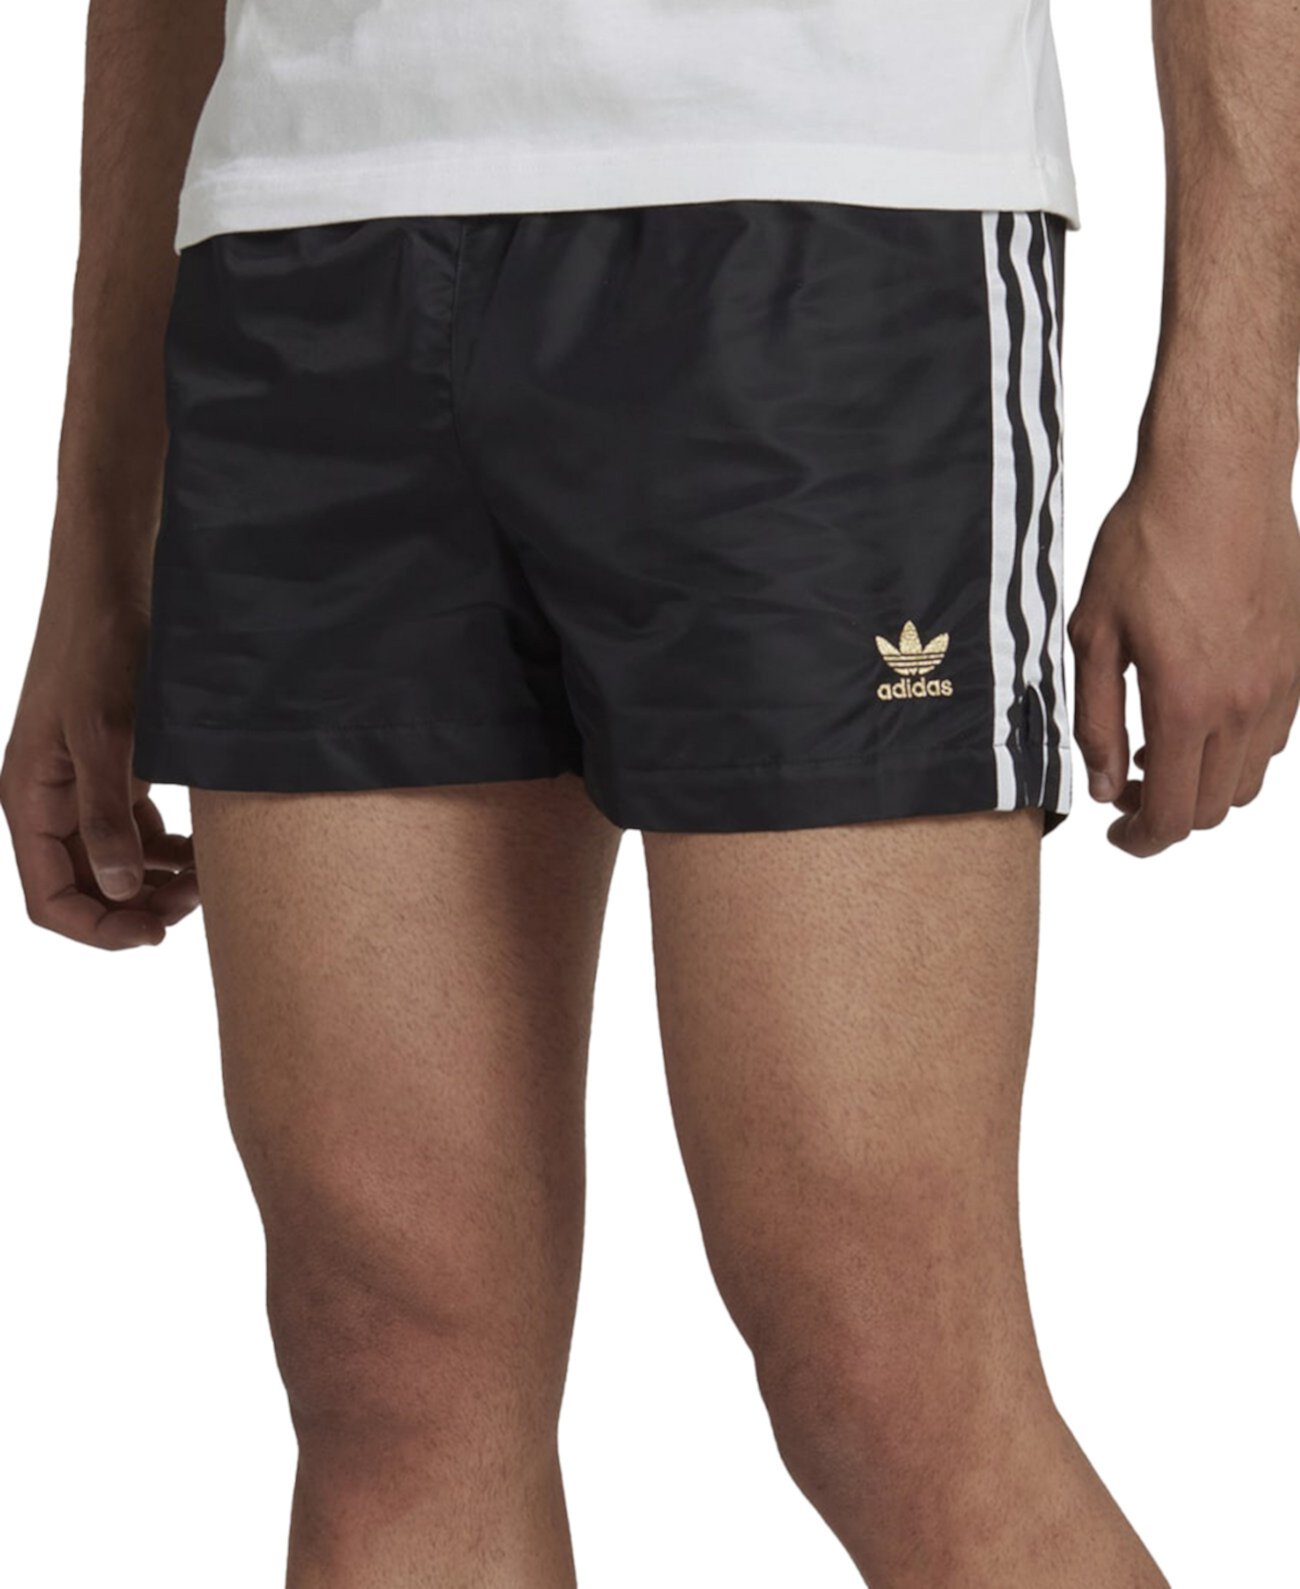 Мужские тканые спортивные шорты с 3 полосками Adidas